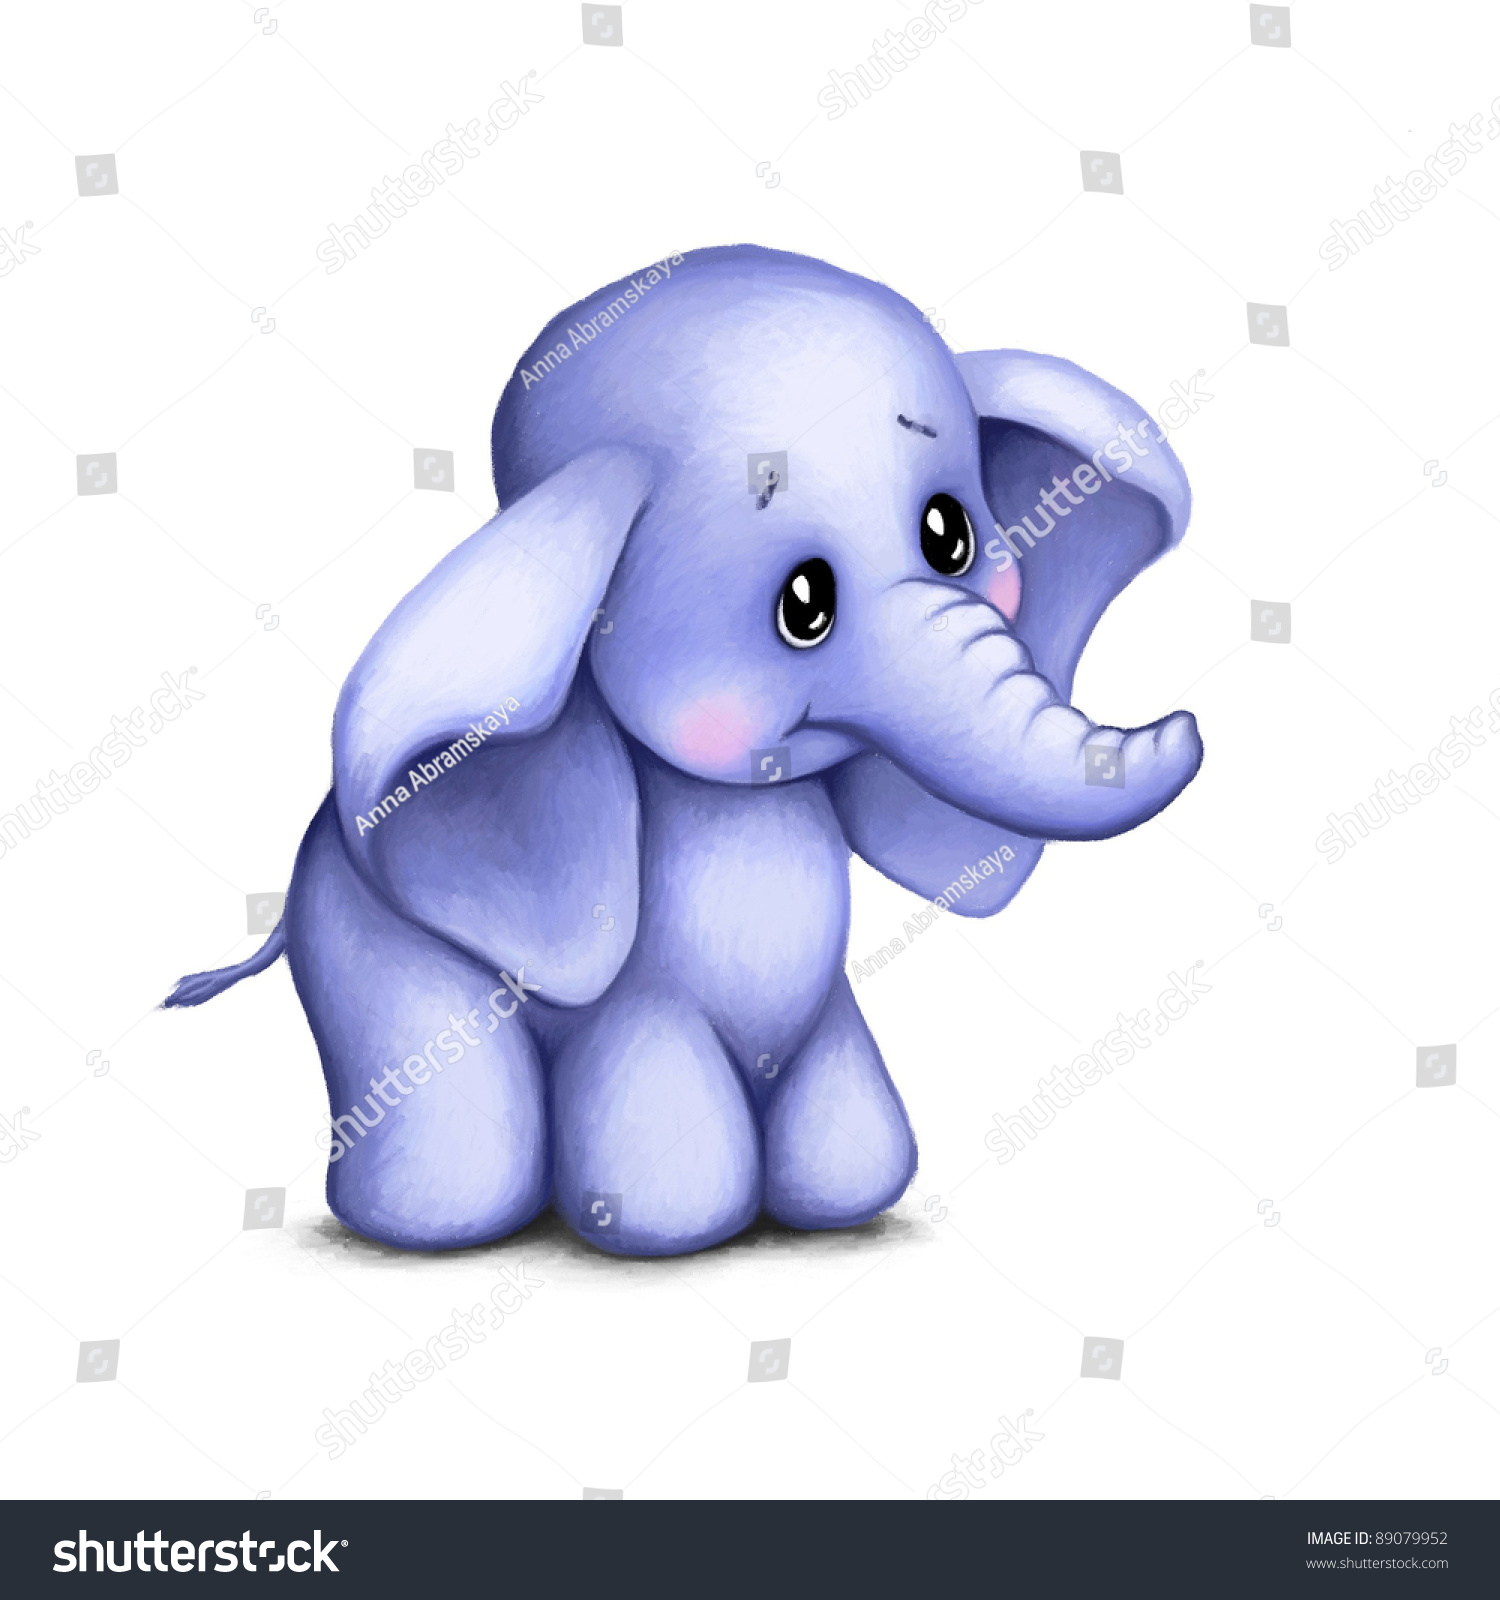 Cute Baby Elephant On White Background Stock Illustration ...